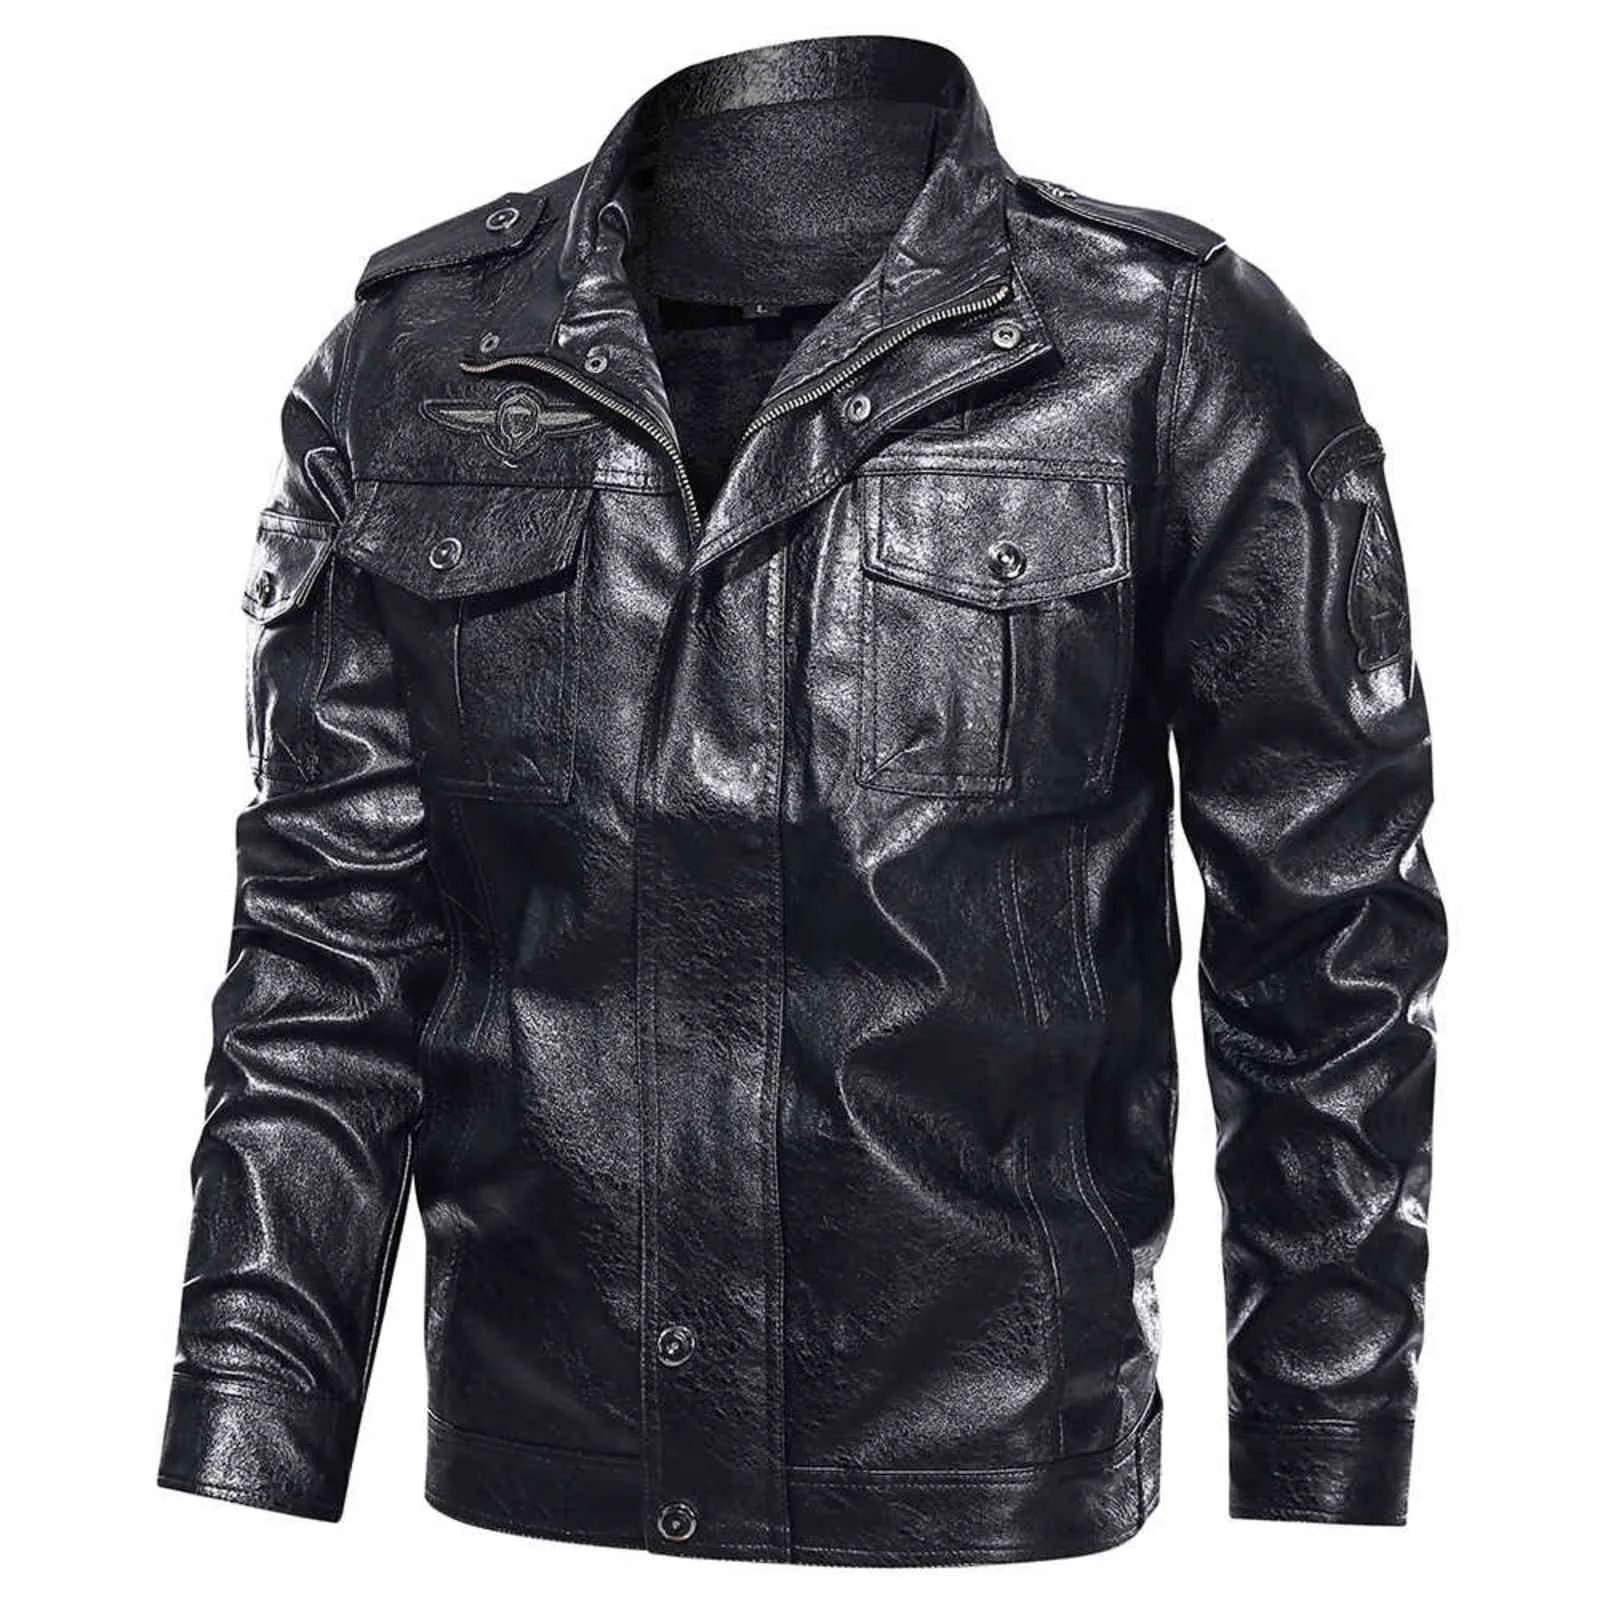 Мужской классический мотоцикл куртка зимний флис толстые мужчины кожаная куртка мотор осень молнии куртка мужской байкер размер пальто 5xL 21119